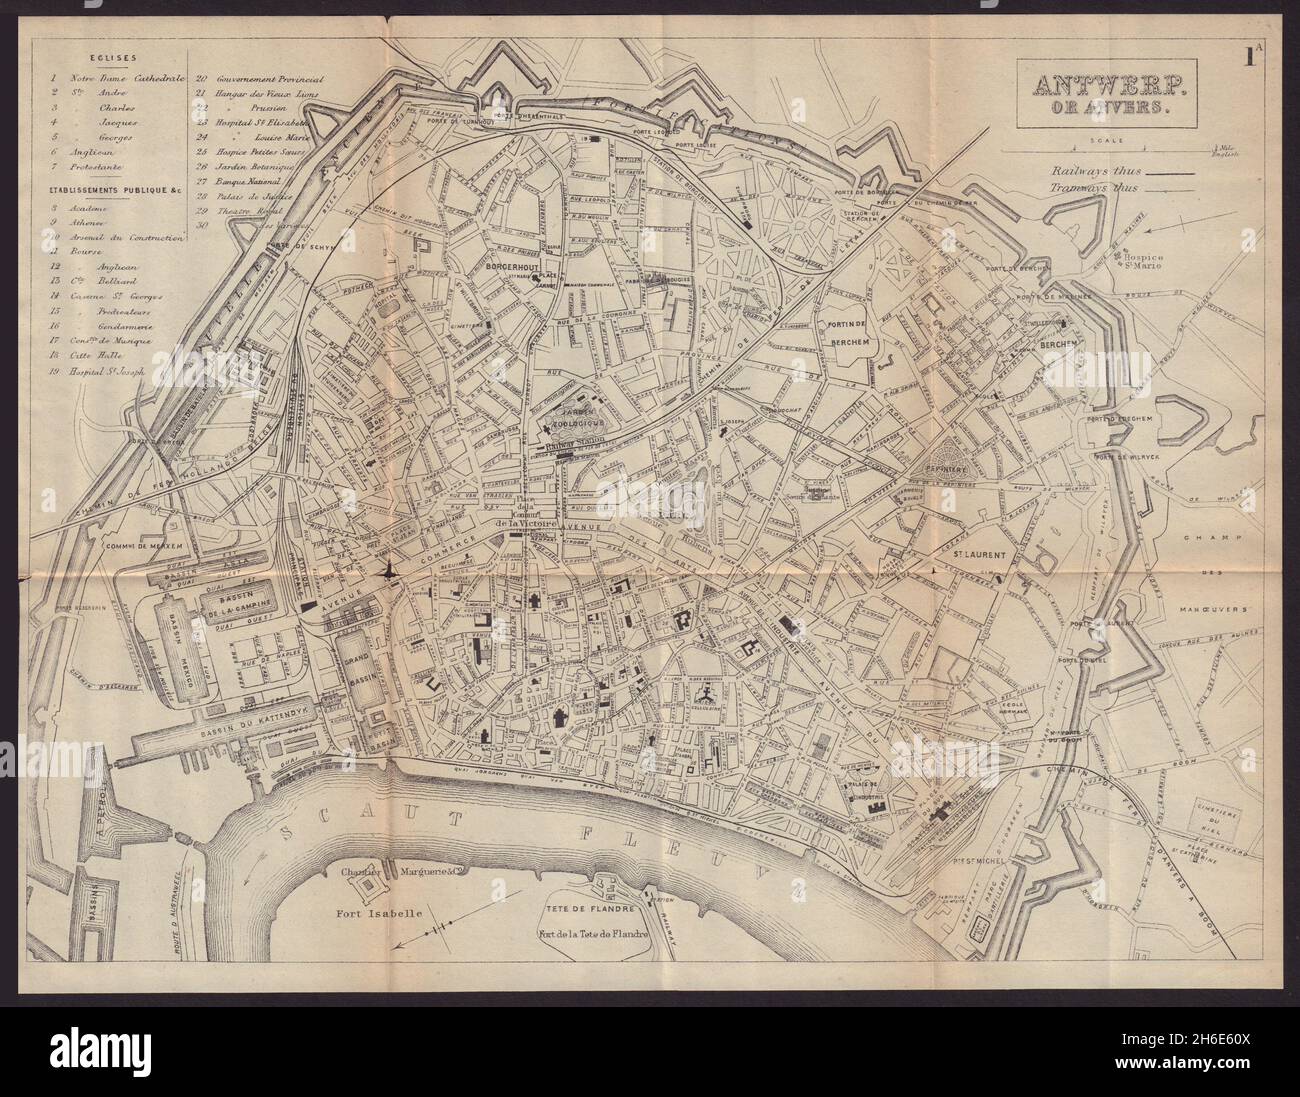 ANTWERP ANVERS ANTWERPEN antique town plan city map. Belgium. BRADSHAW 1893 Stock Photo